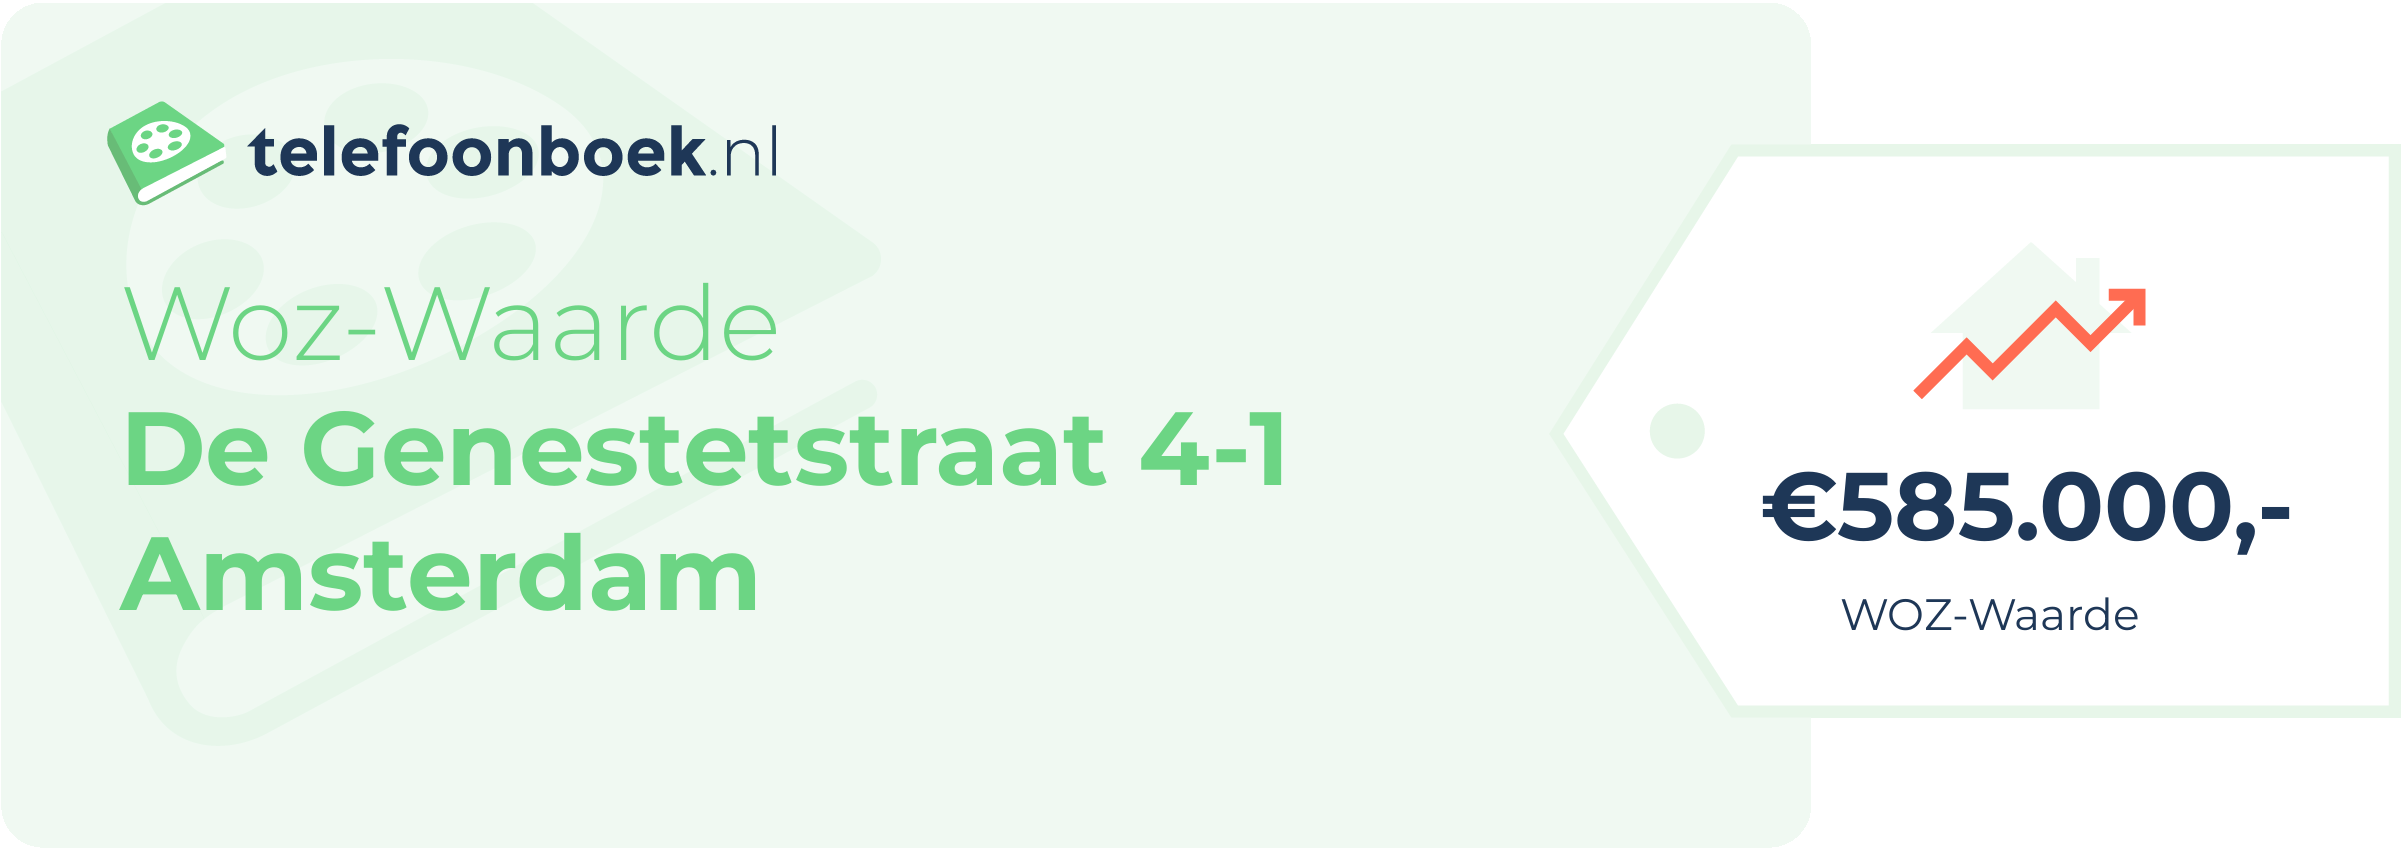 WOZ-waarde De Genestetstraat 4-1 Amsterdam